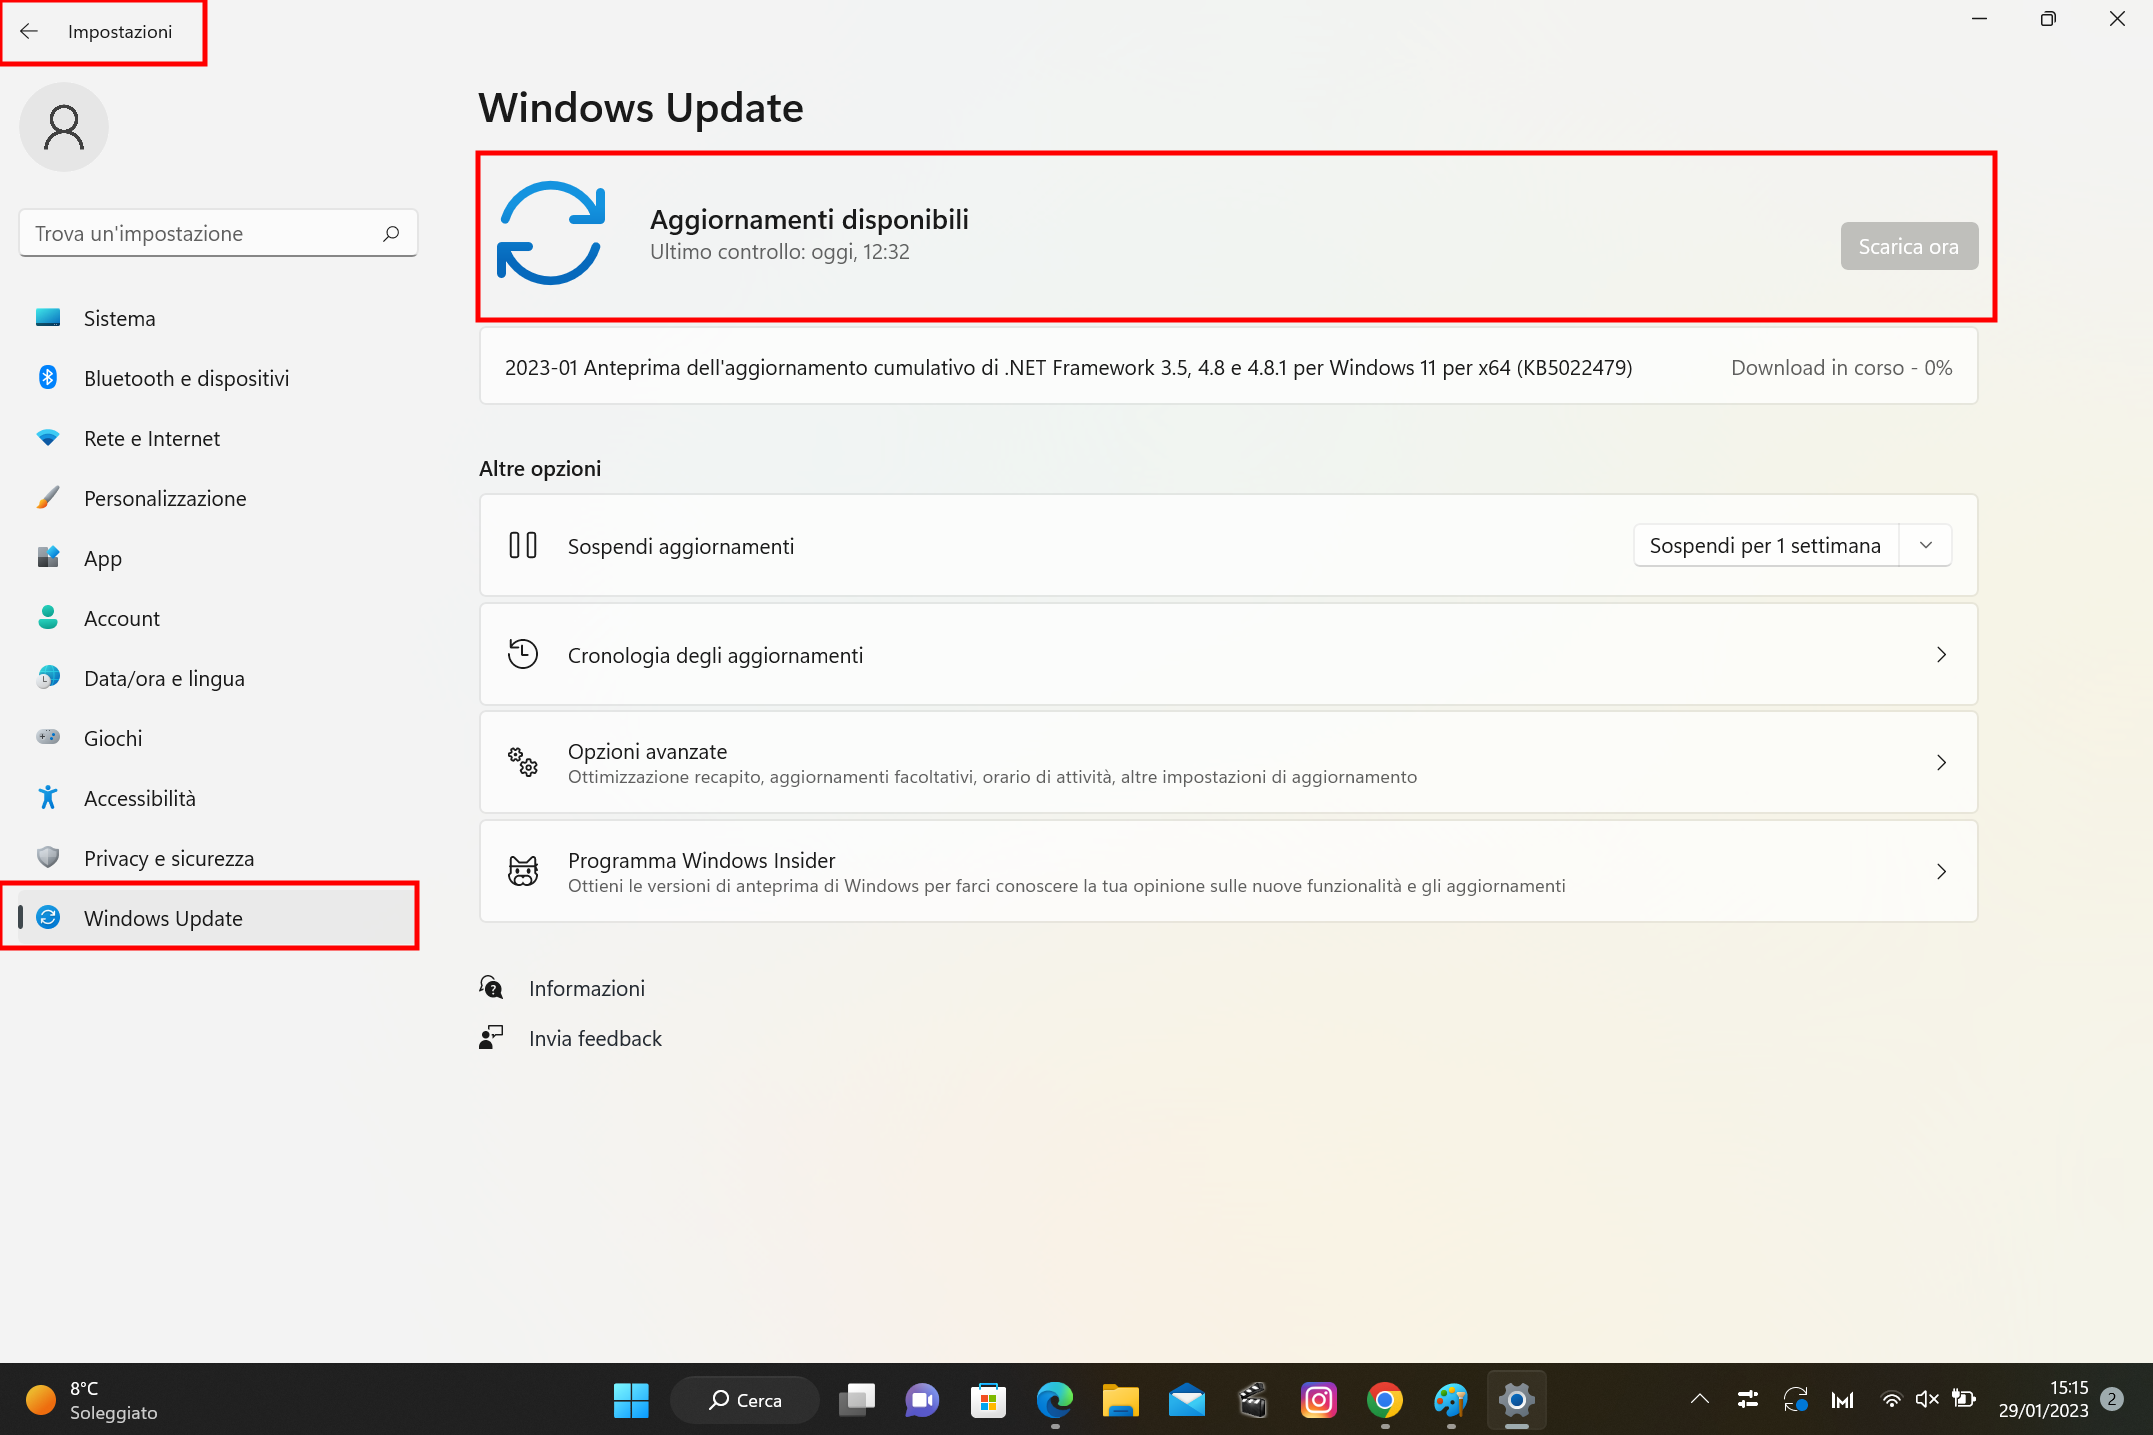 Scaricare l’ultima versione di Windows 10 o 11